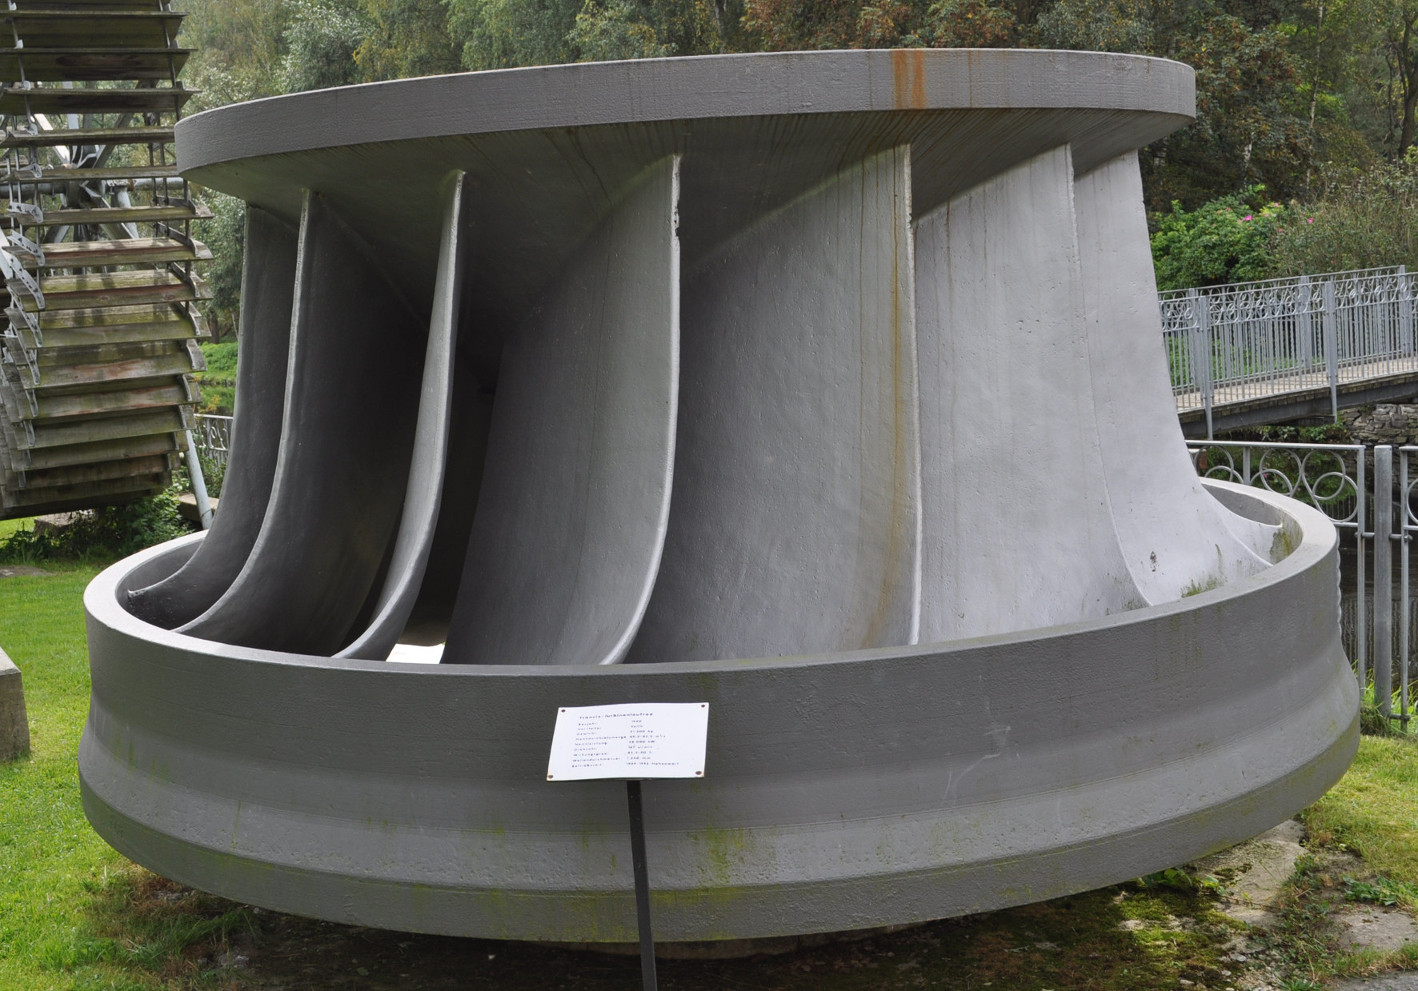  Laufrad einer großen Franzis-Turbine (Exponat des Wasserkraftmuseums Ziegenrück) mit einem Schluckvermögen von bis zu 85m3/s. Die Anlage leistete ca. 28 MW.